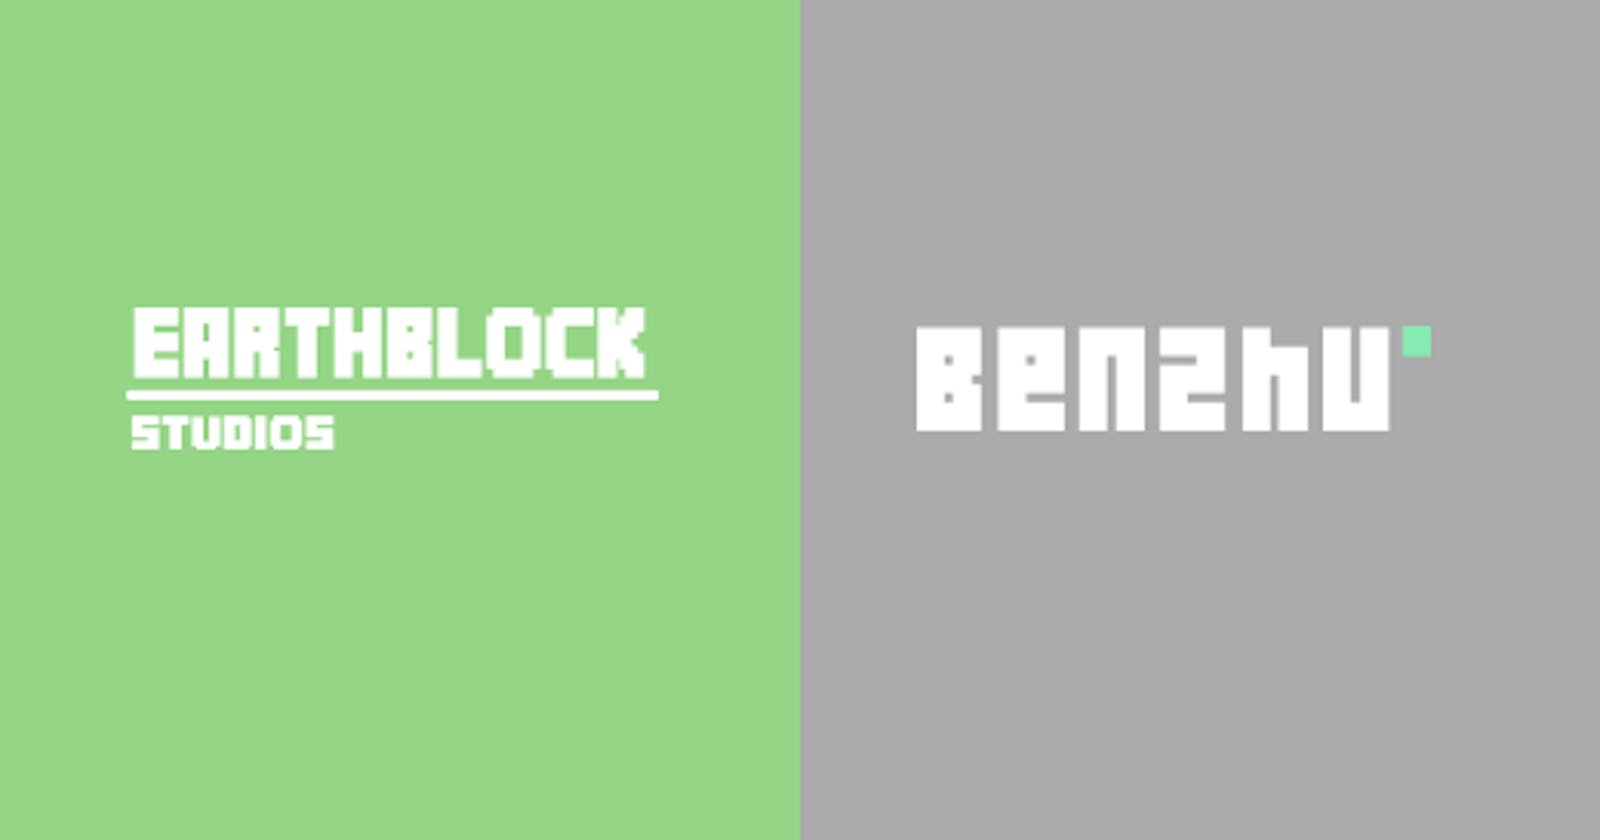 EarthBlock se convierte en Benzhu Studios